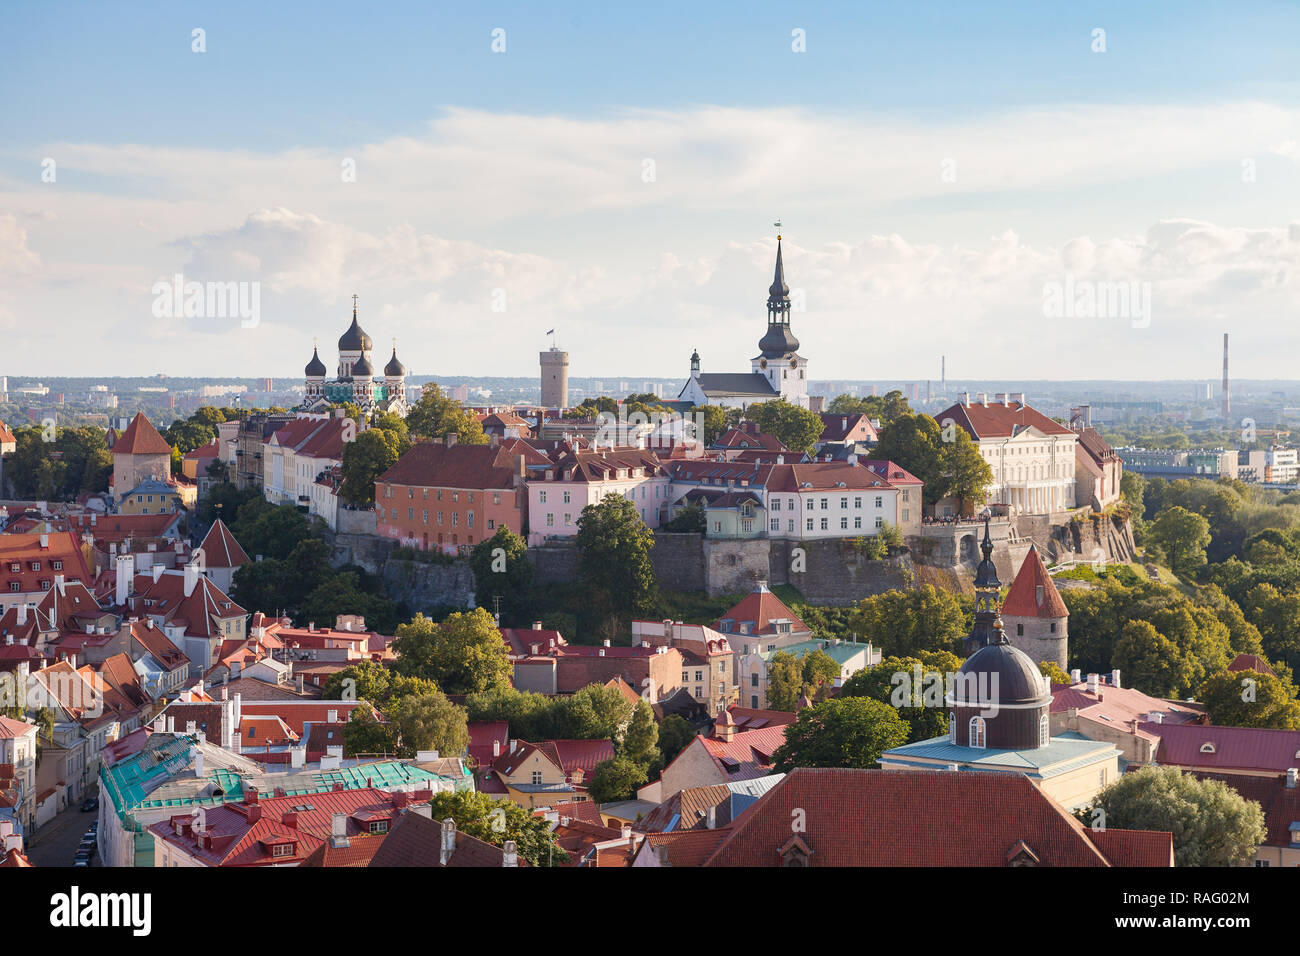 Cityscape vue aérienne sur la partie supérieure de la vieille ville avec l'église Saint Nicolas et la tour de la colline de Toompea à Tallinn, Estonie Banque D'Images